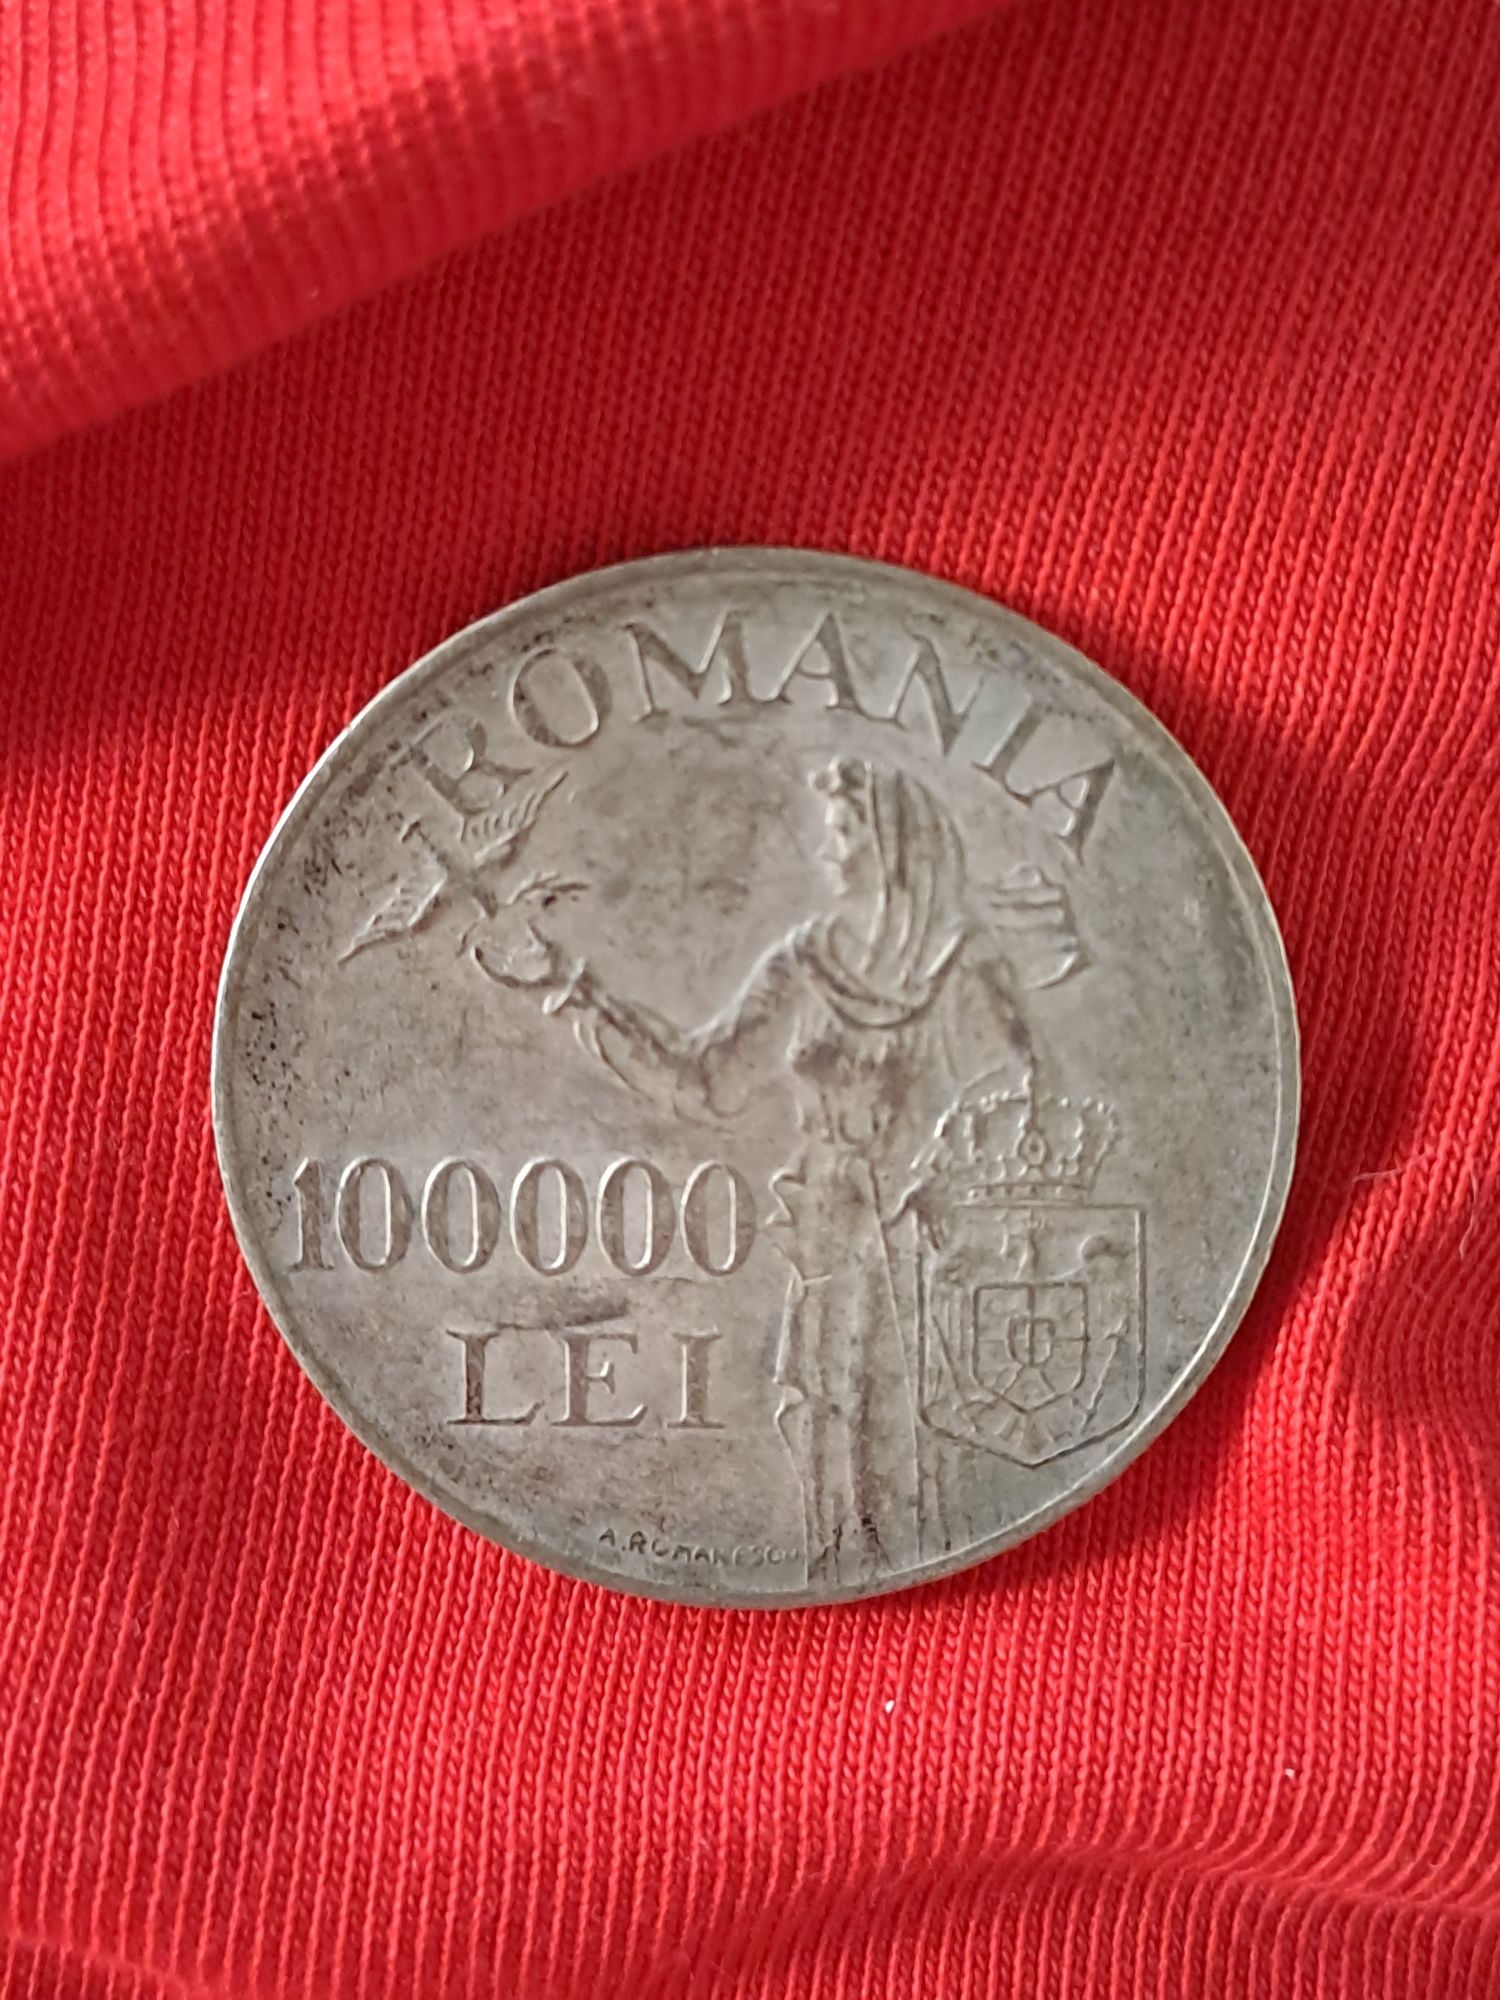 Monede Originale din argint cu Mihai I Regele Romanilor anul 1946